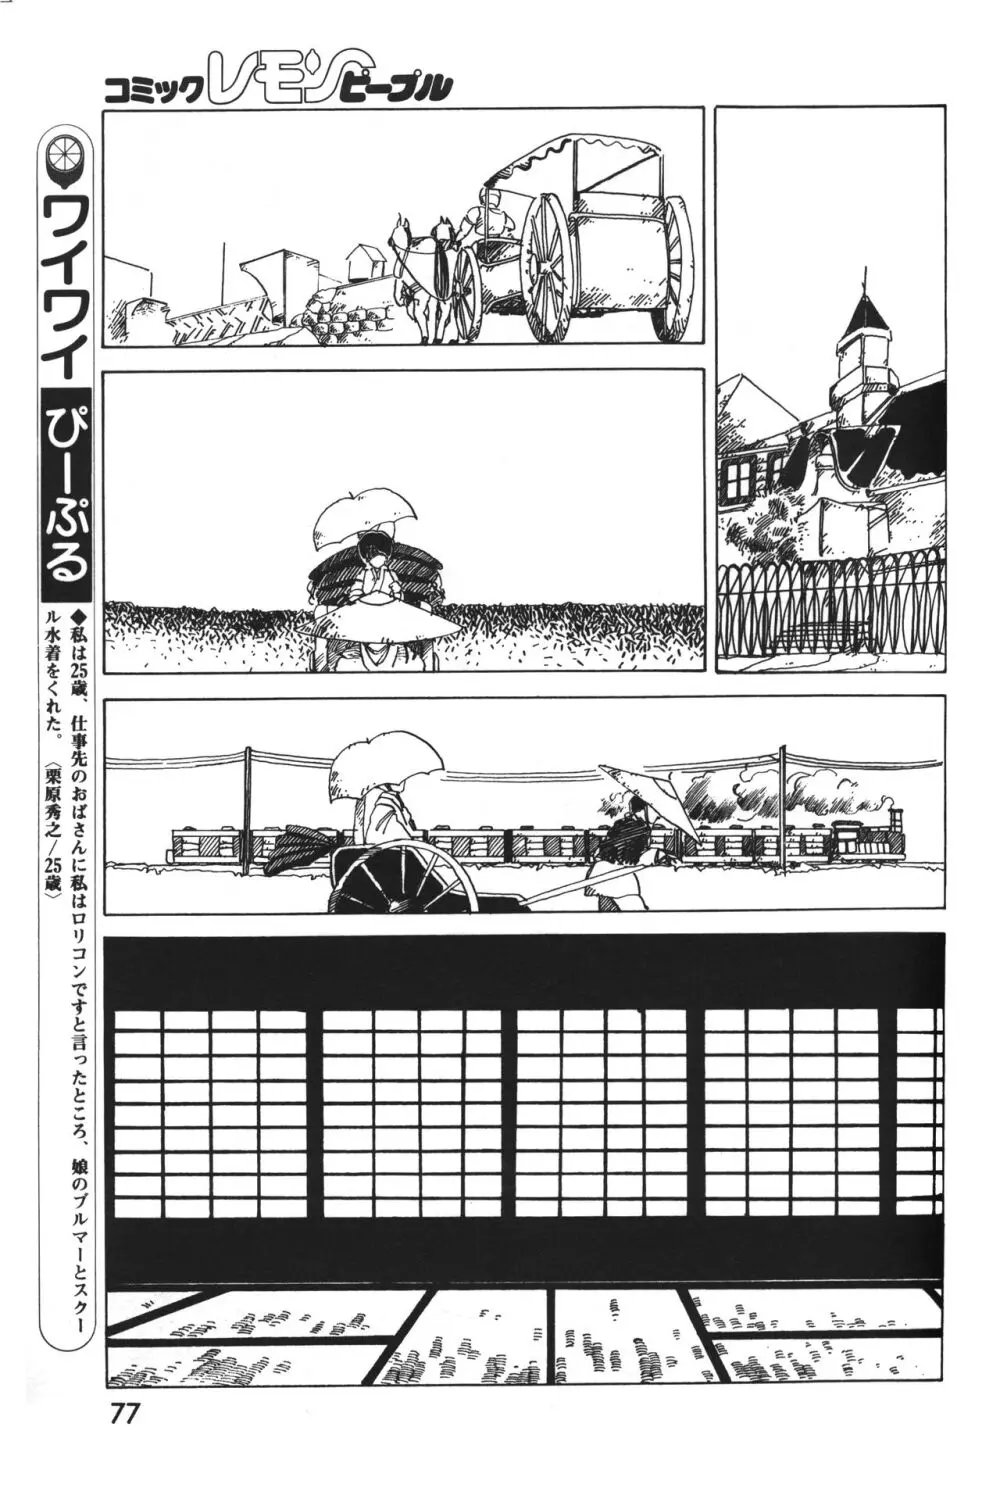 レモンピープル 1983年12月号 vol.23 78ページ